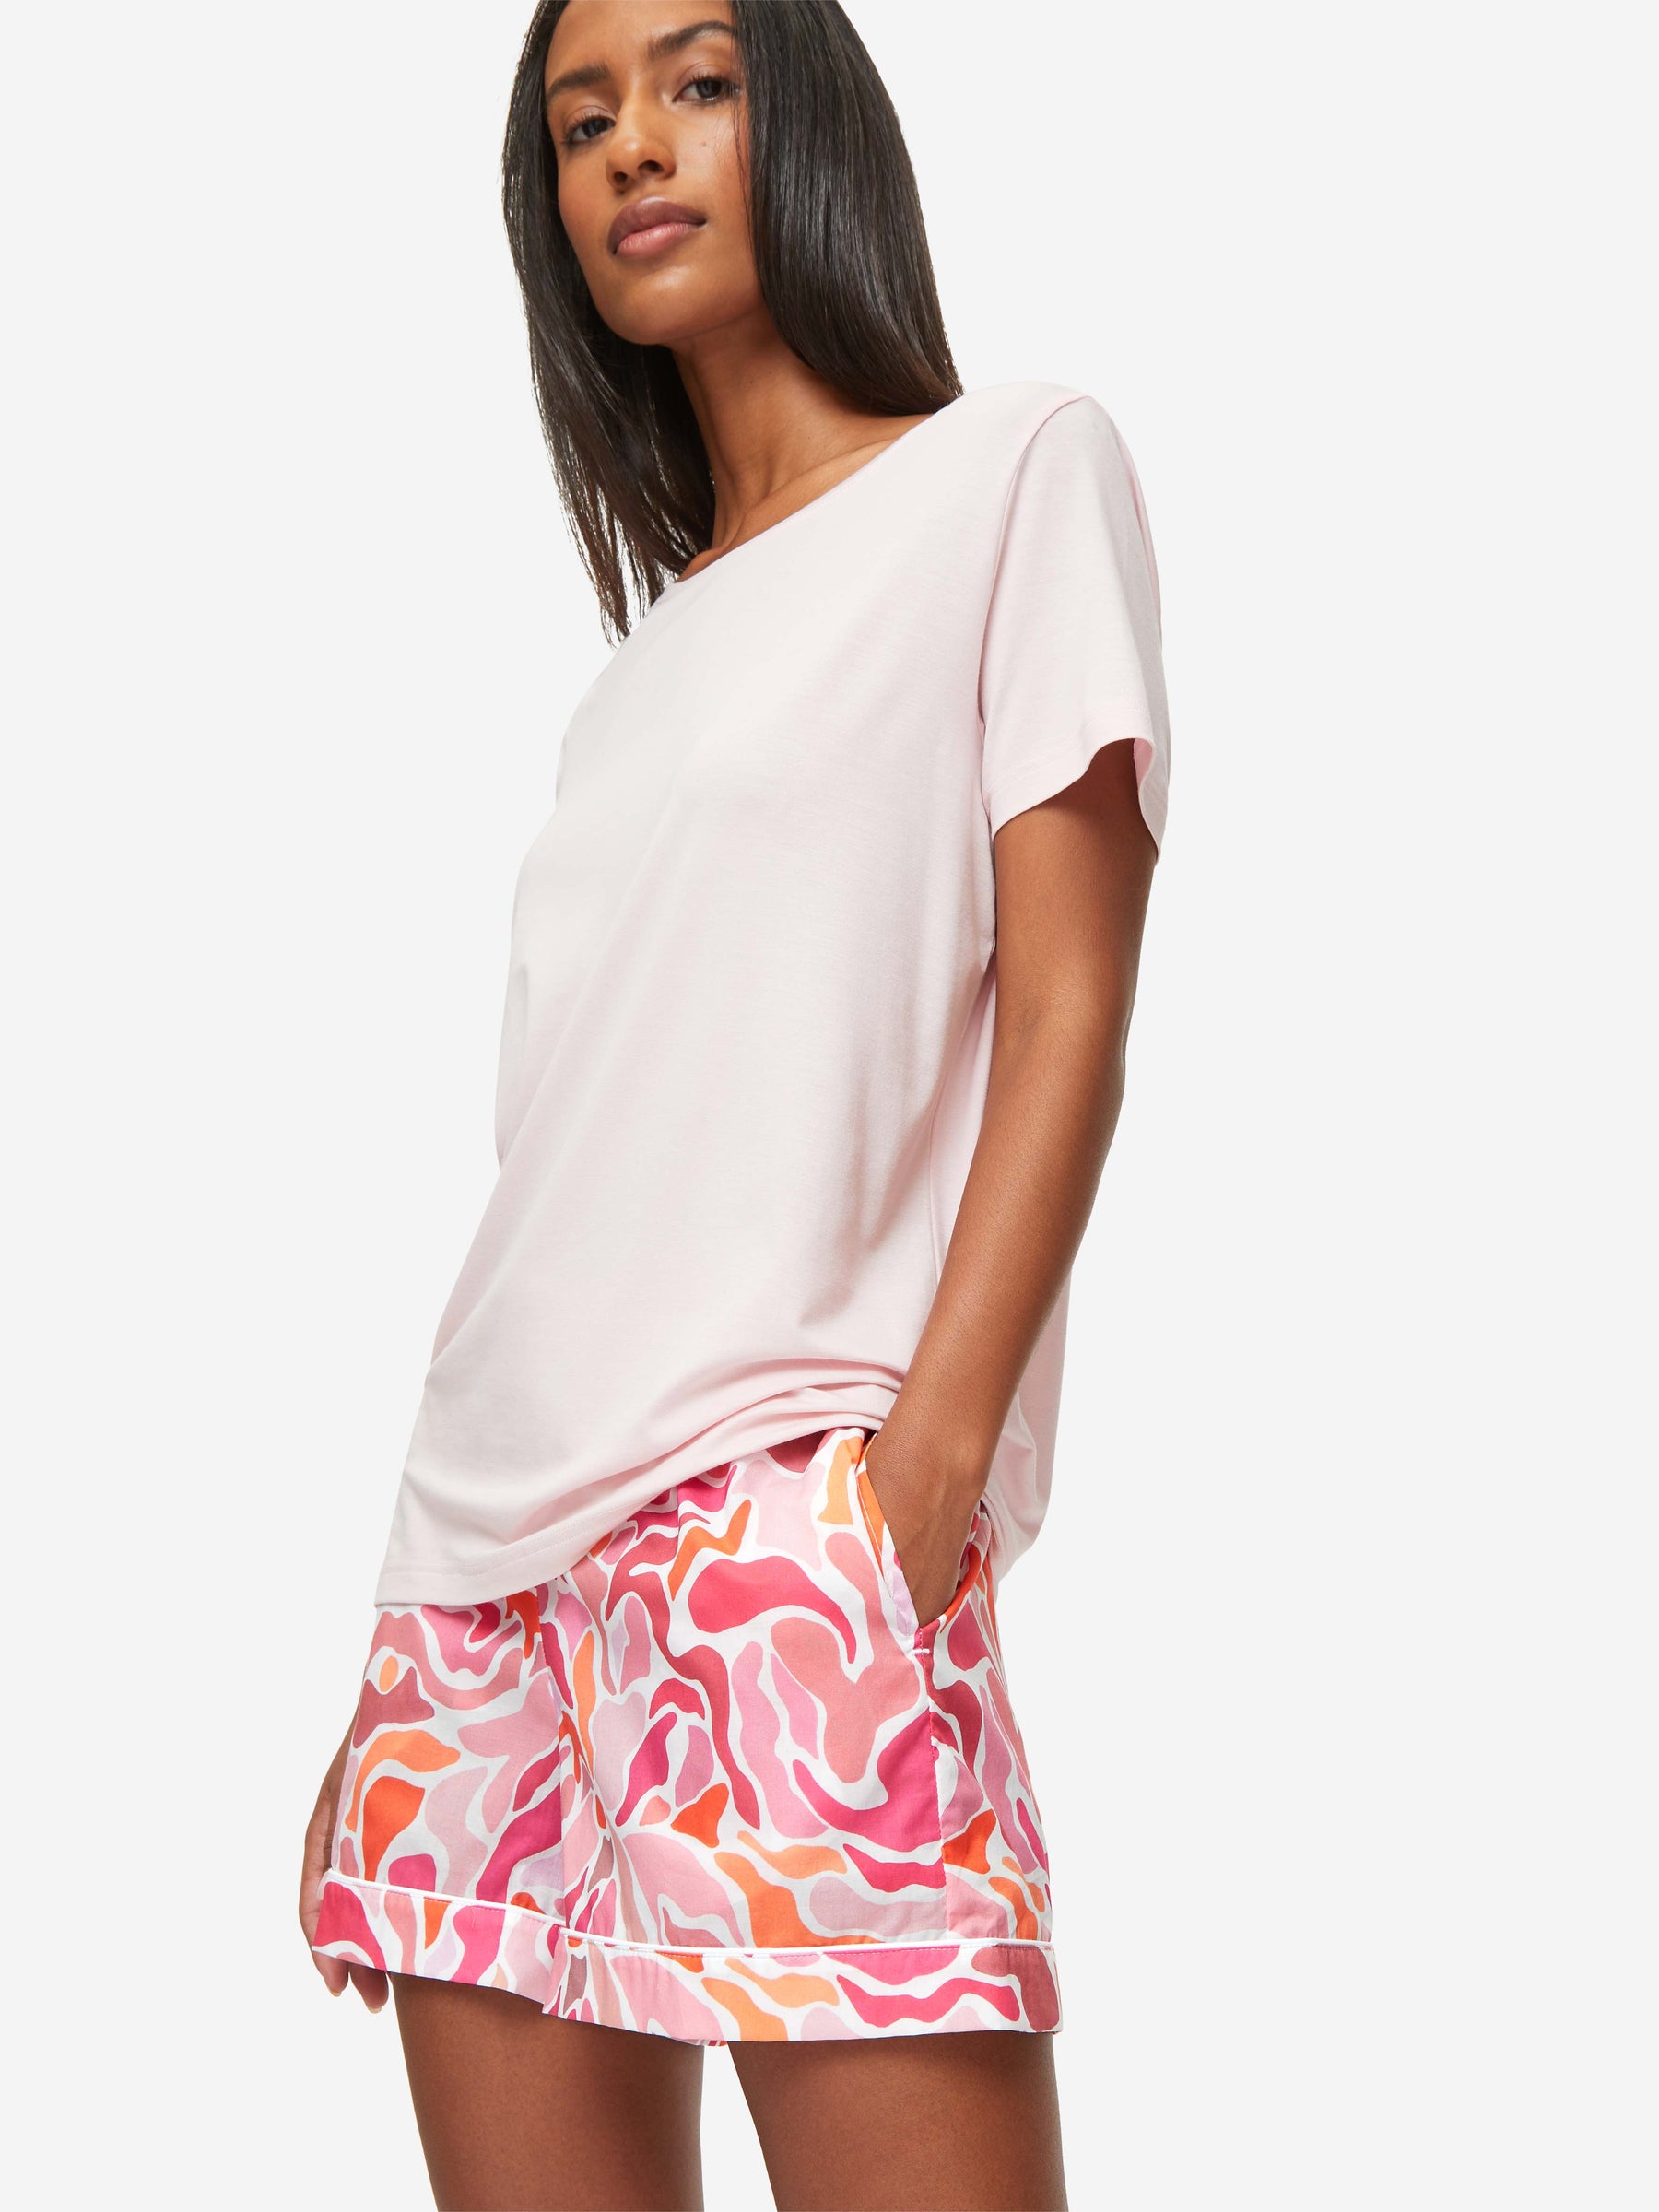 Women's Lounge Shorts Ledbury 61 Cotton Batiste Pink